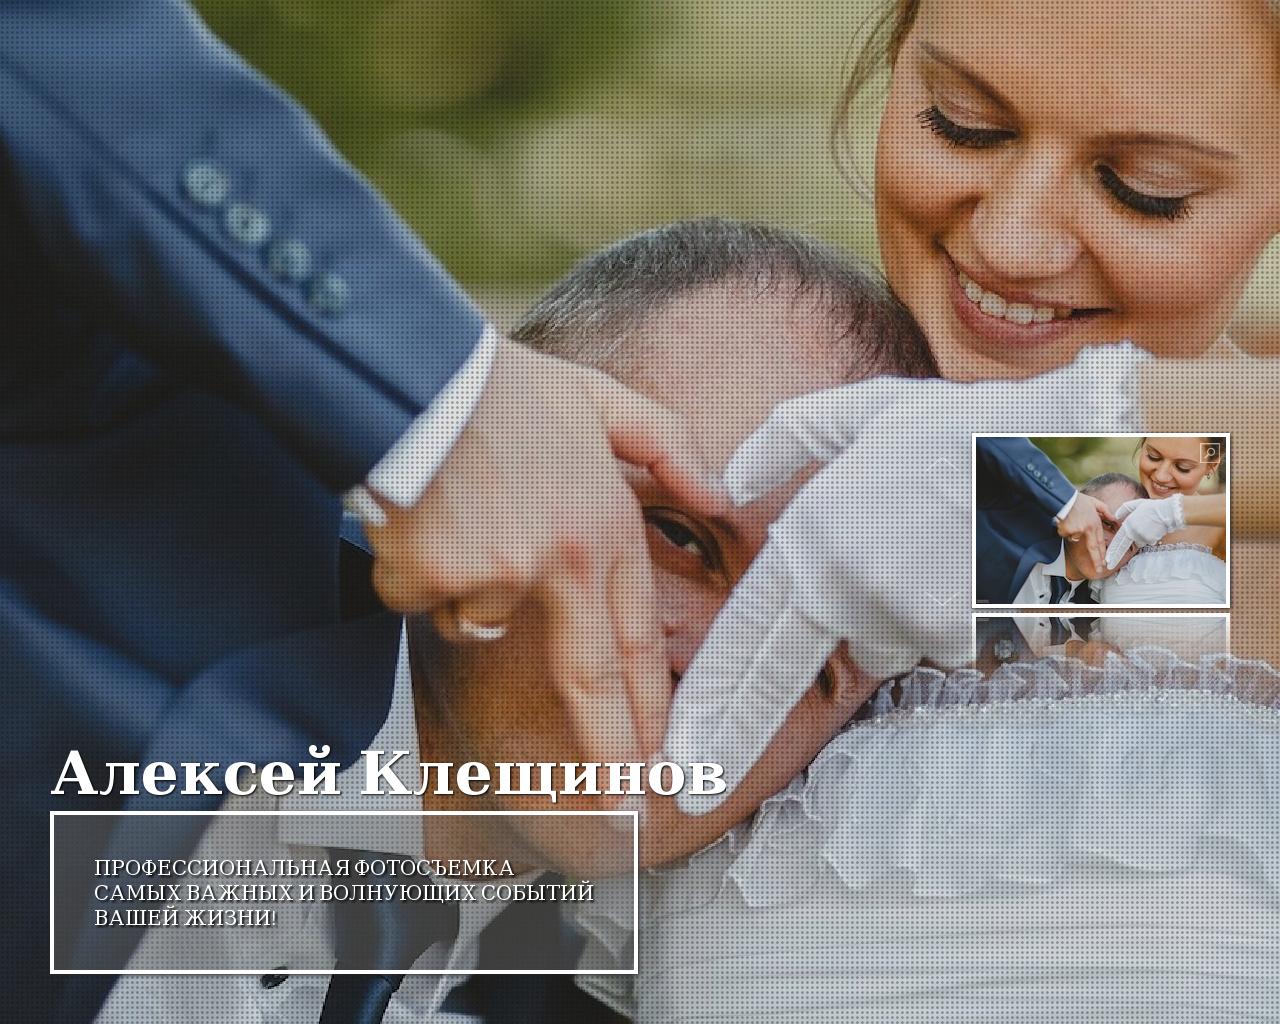 Изображение сайта amkleschinov.ru в разрешении 1280x1024